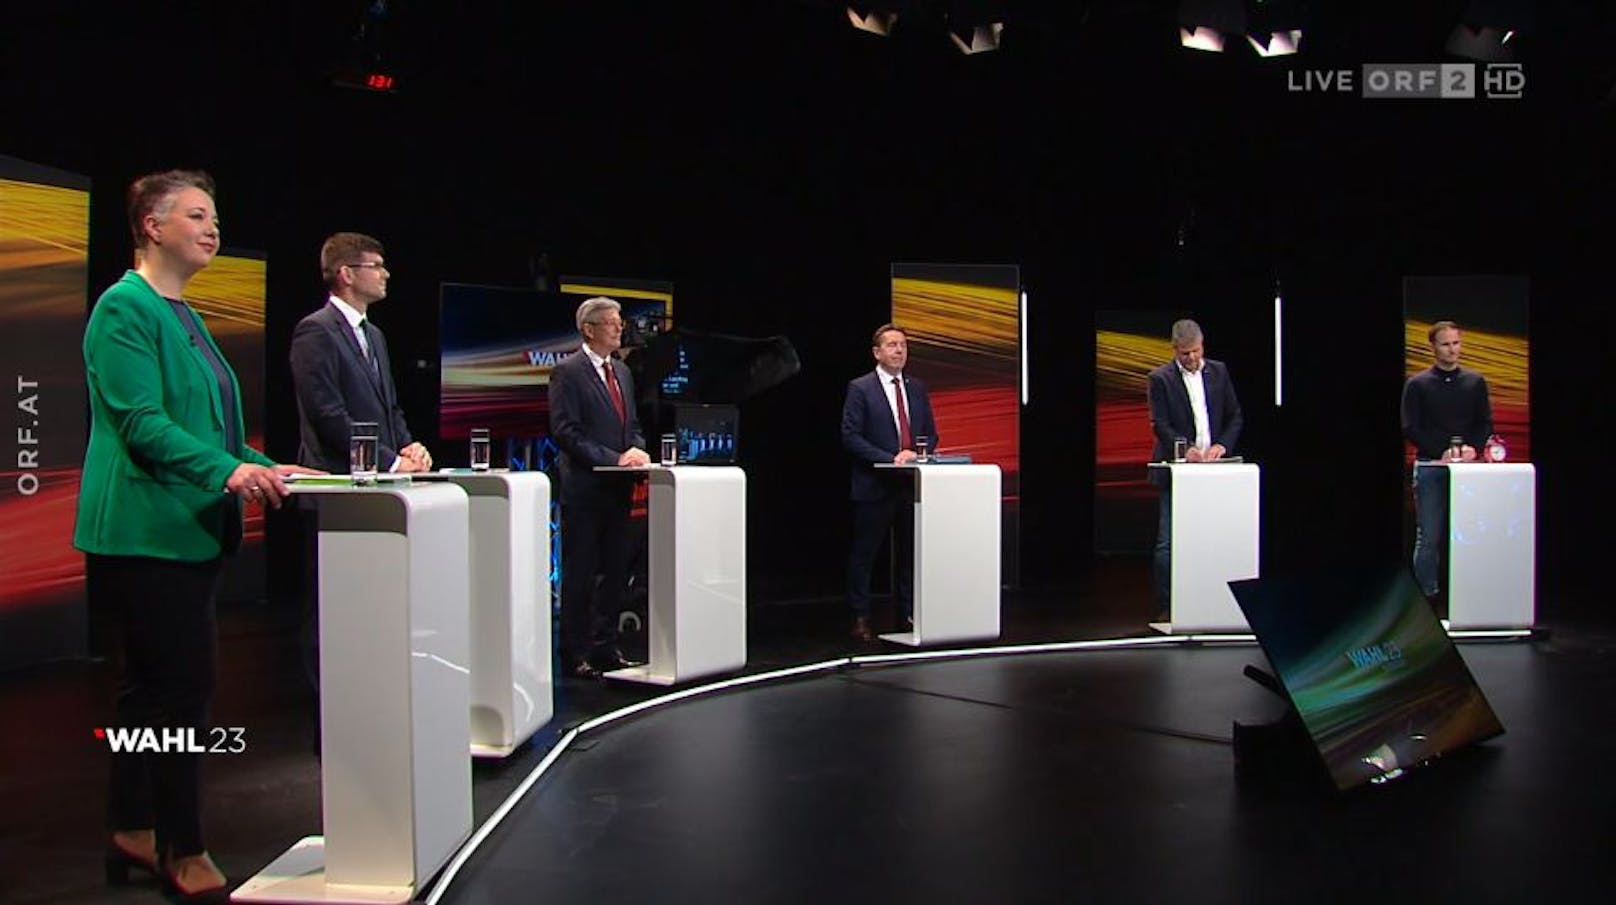 Kärnten-Wahl 23-Diskussion im ORF am 28. Februar 2023: Das sind die Spitzenkandidaten